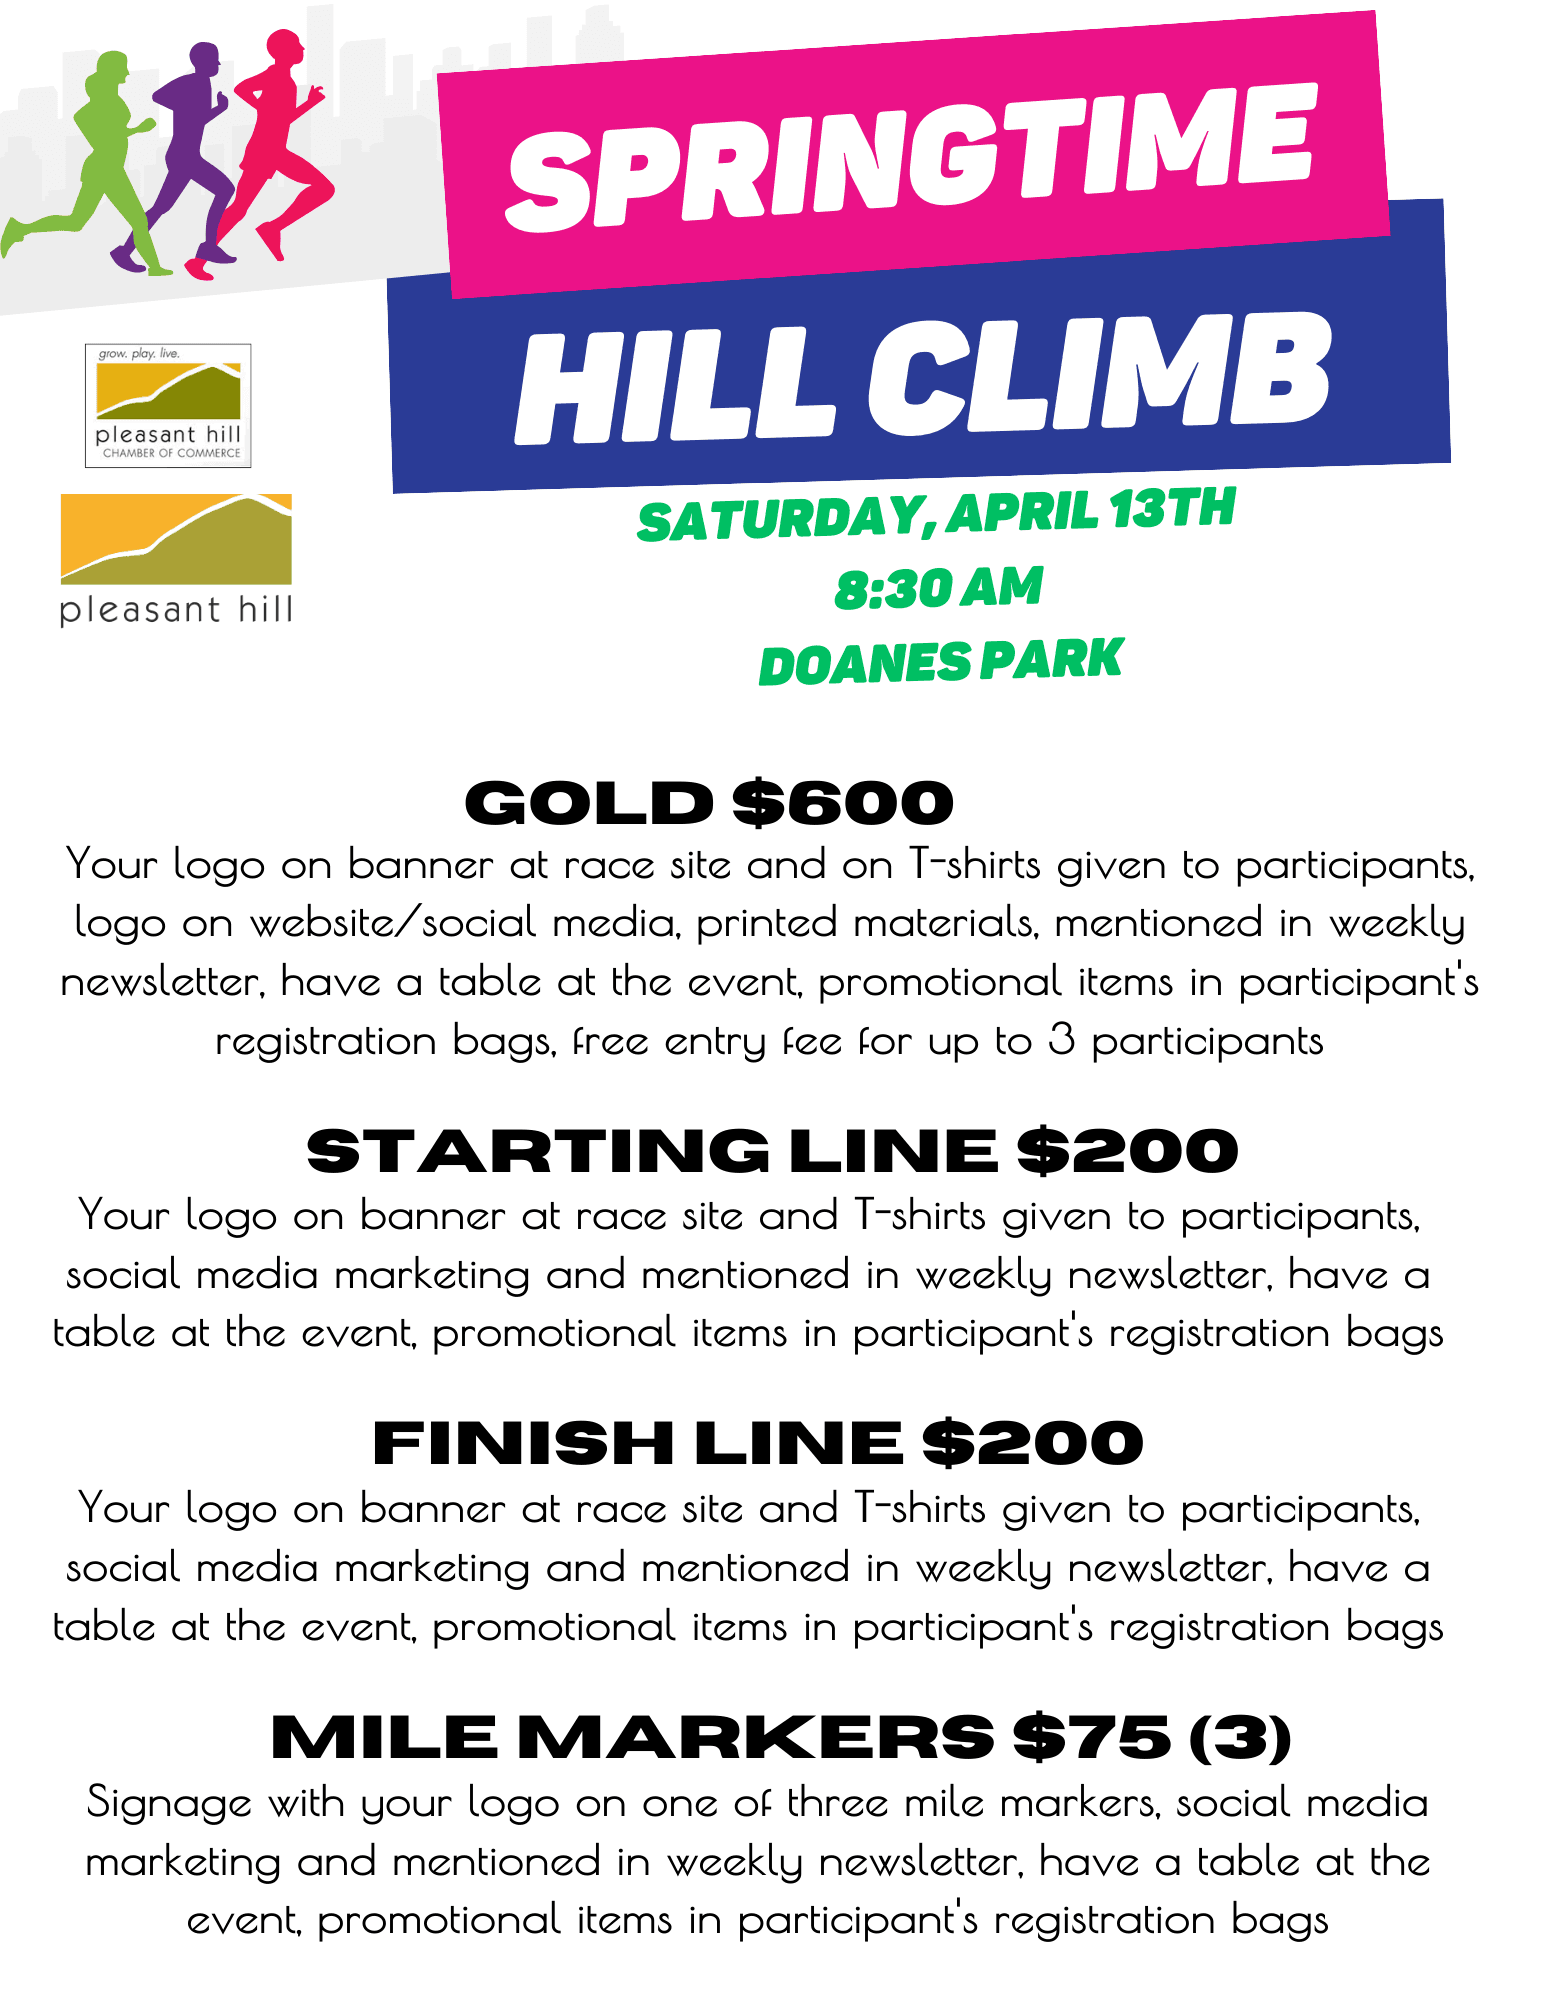 Springtime Hill Climb